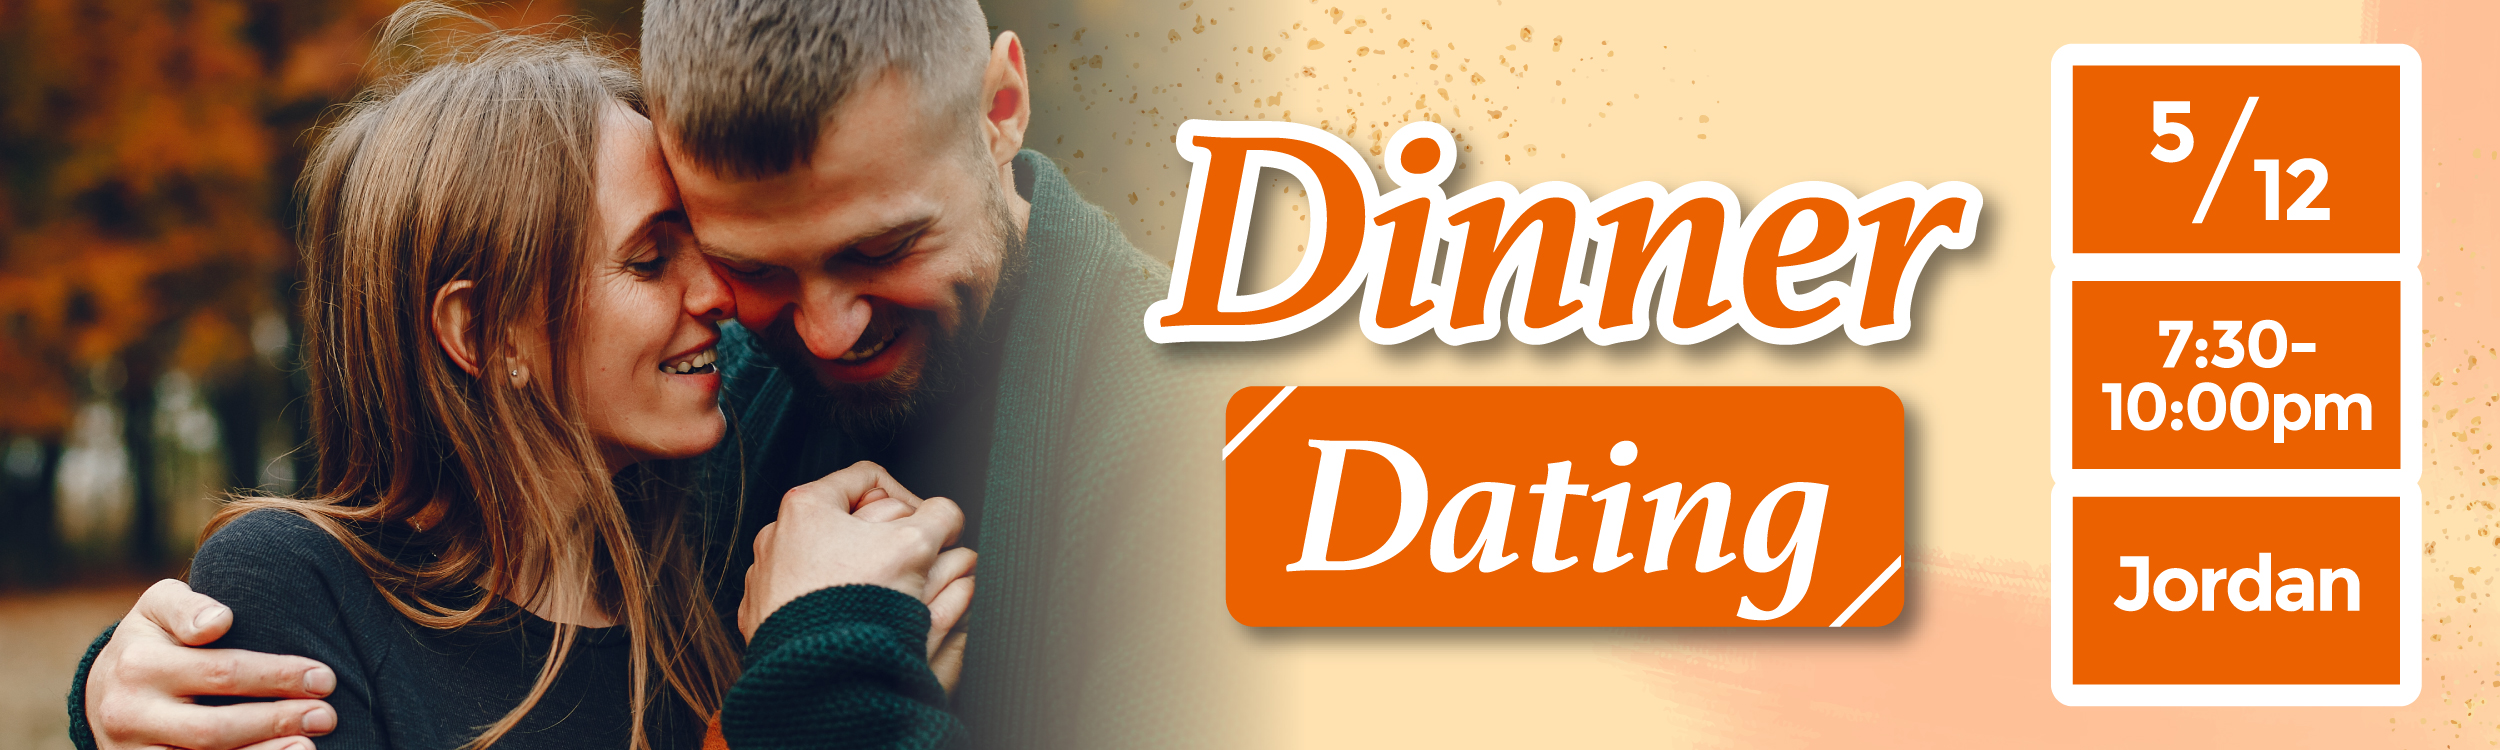 最新Speed Dating約會消息: Indian Dinner Dating ‧ Remain M:12 F:9